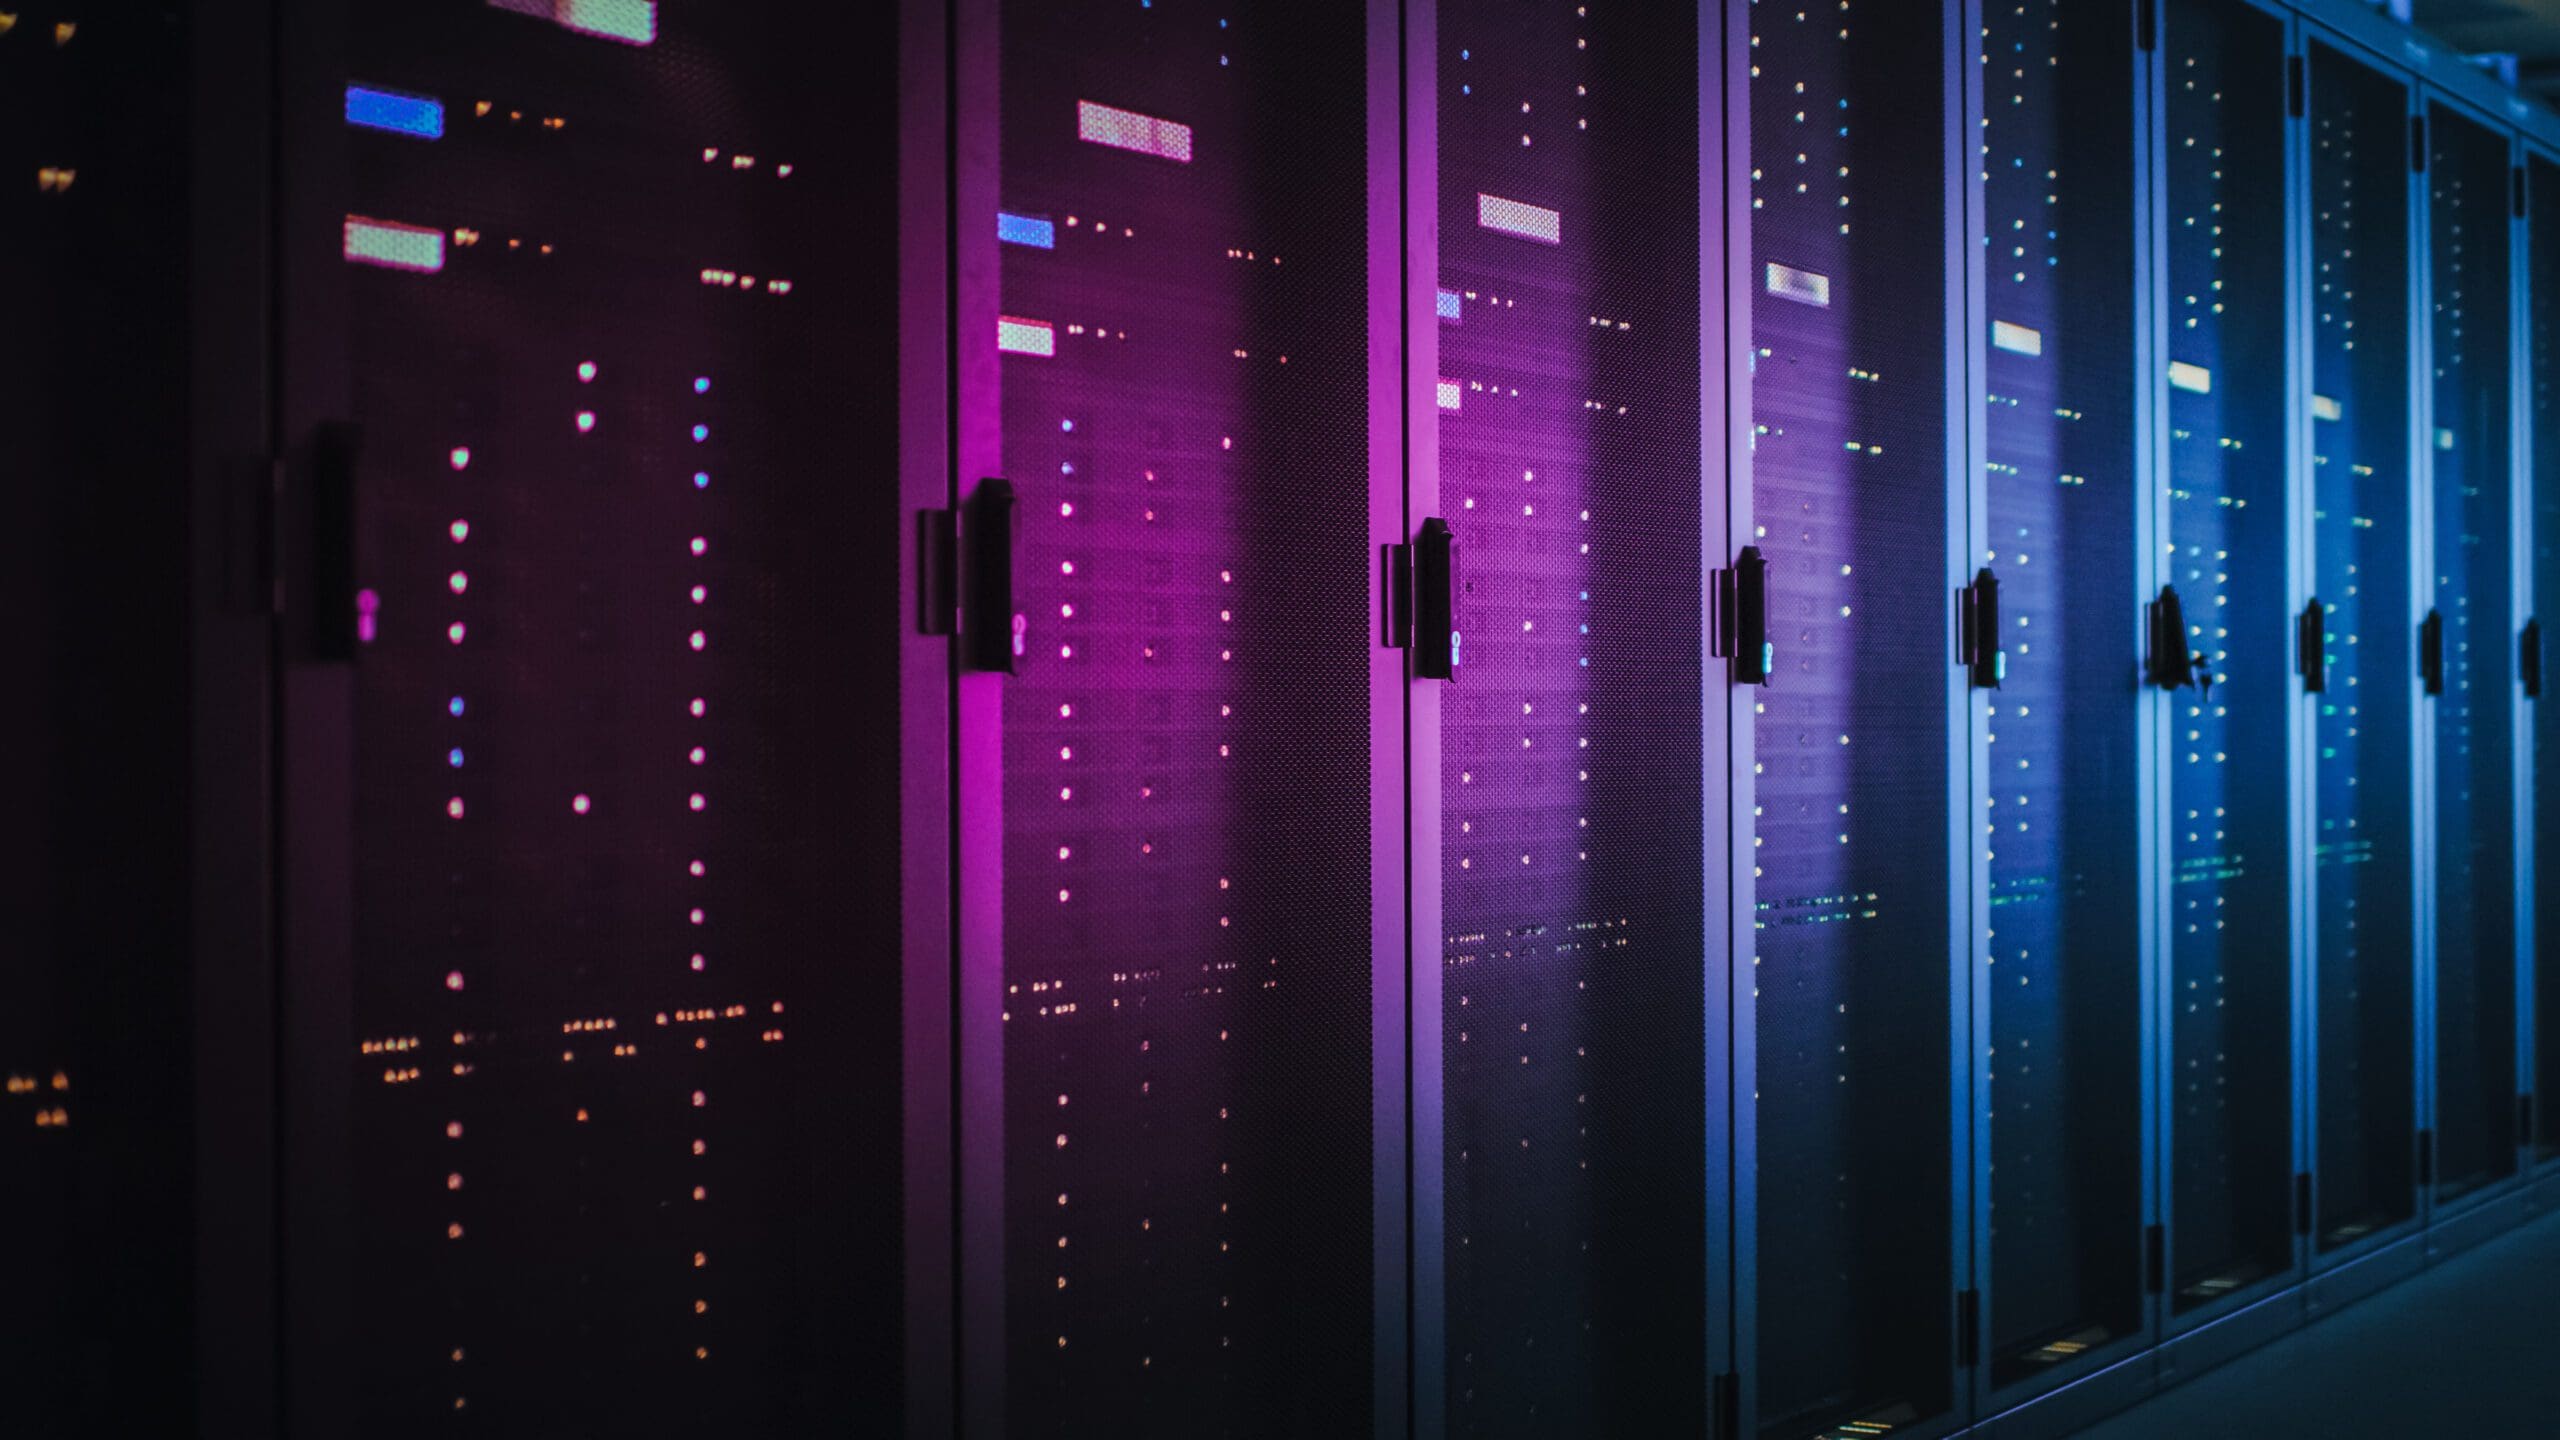 [dephoro] Host - Data Center - A colorful depiction of a server rack, representative of a hosting service.